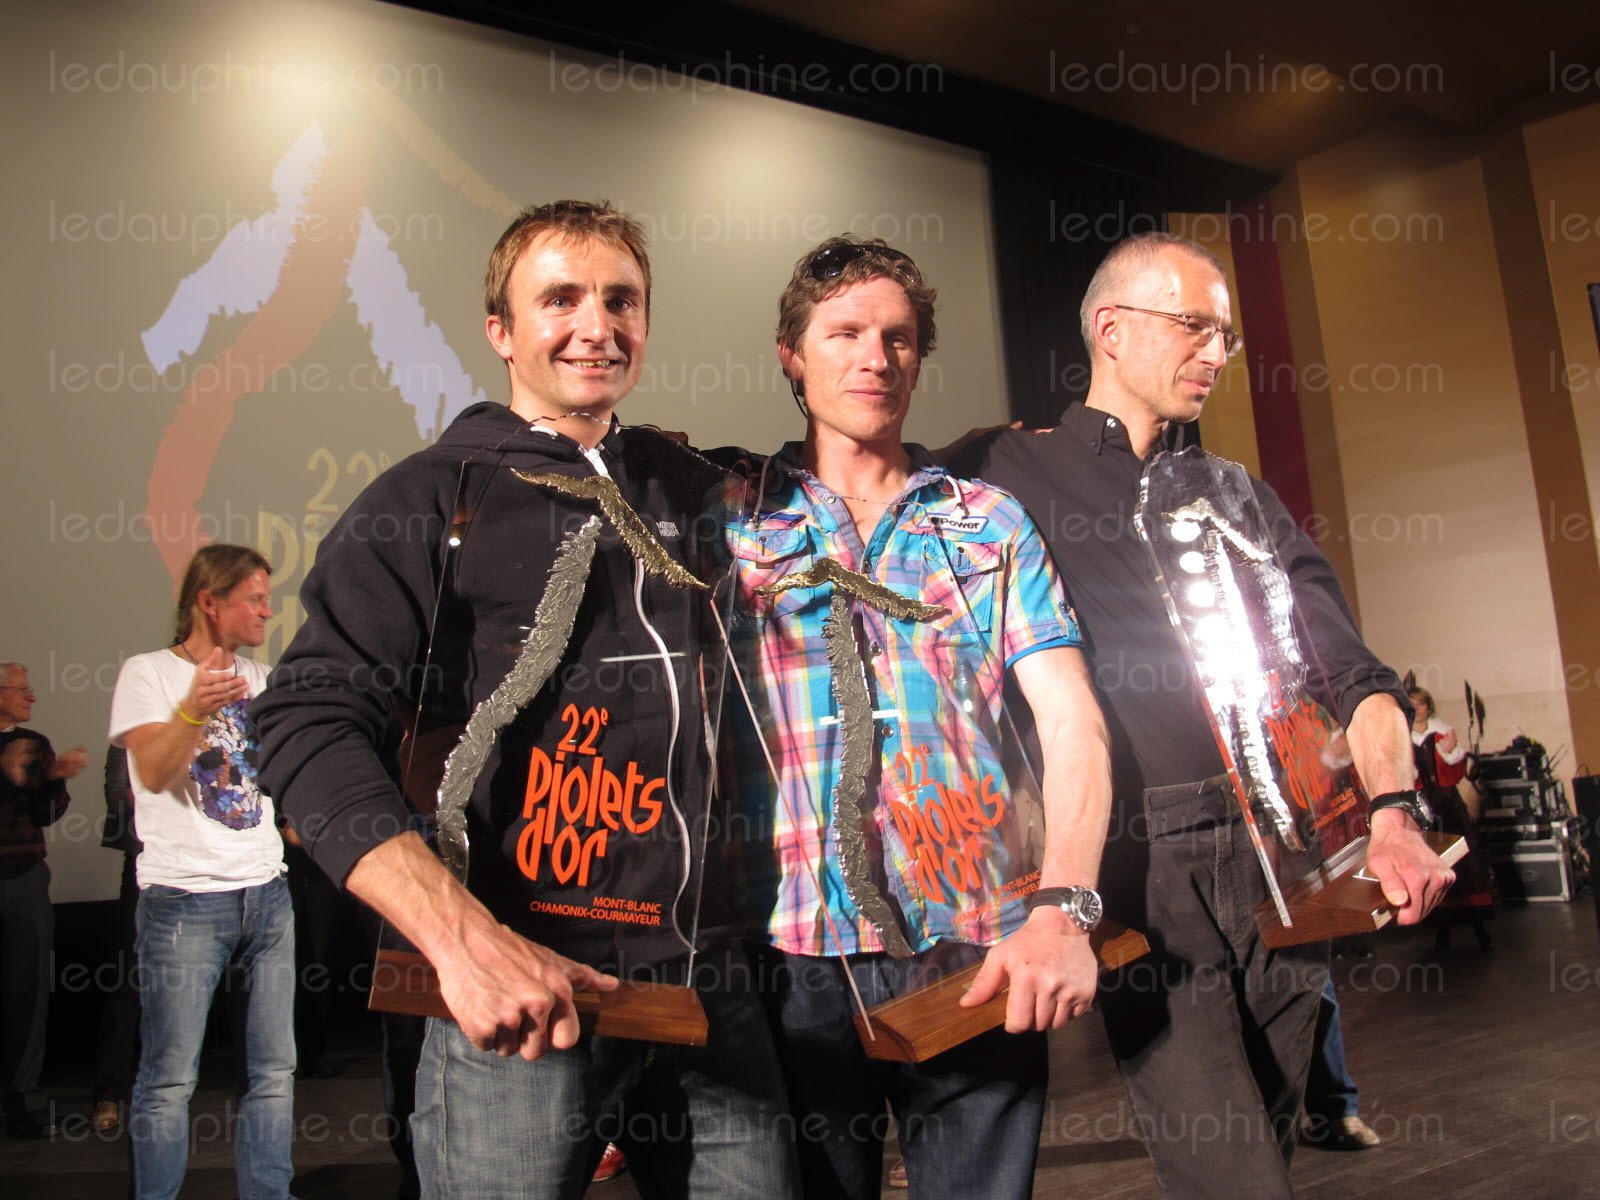  Ули Штек (Ueli Steck), Ян Вельстед (Ian Welsted) и Рафаэль Славински (Raphael Slawinski) получают награду "Золотой Ледоруб 2014" (Piolets d